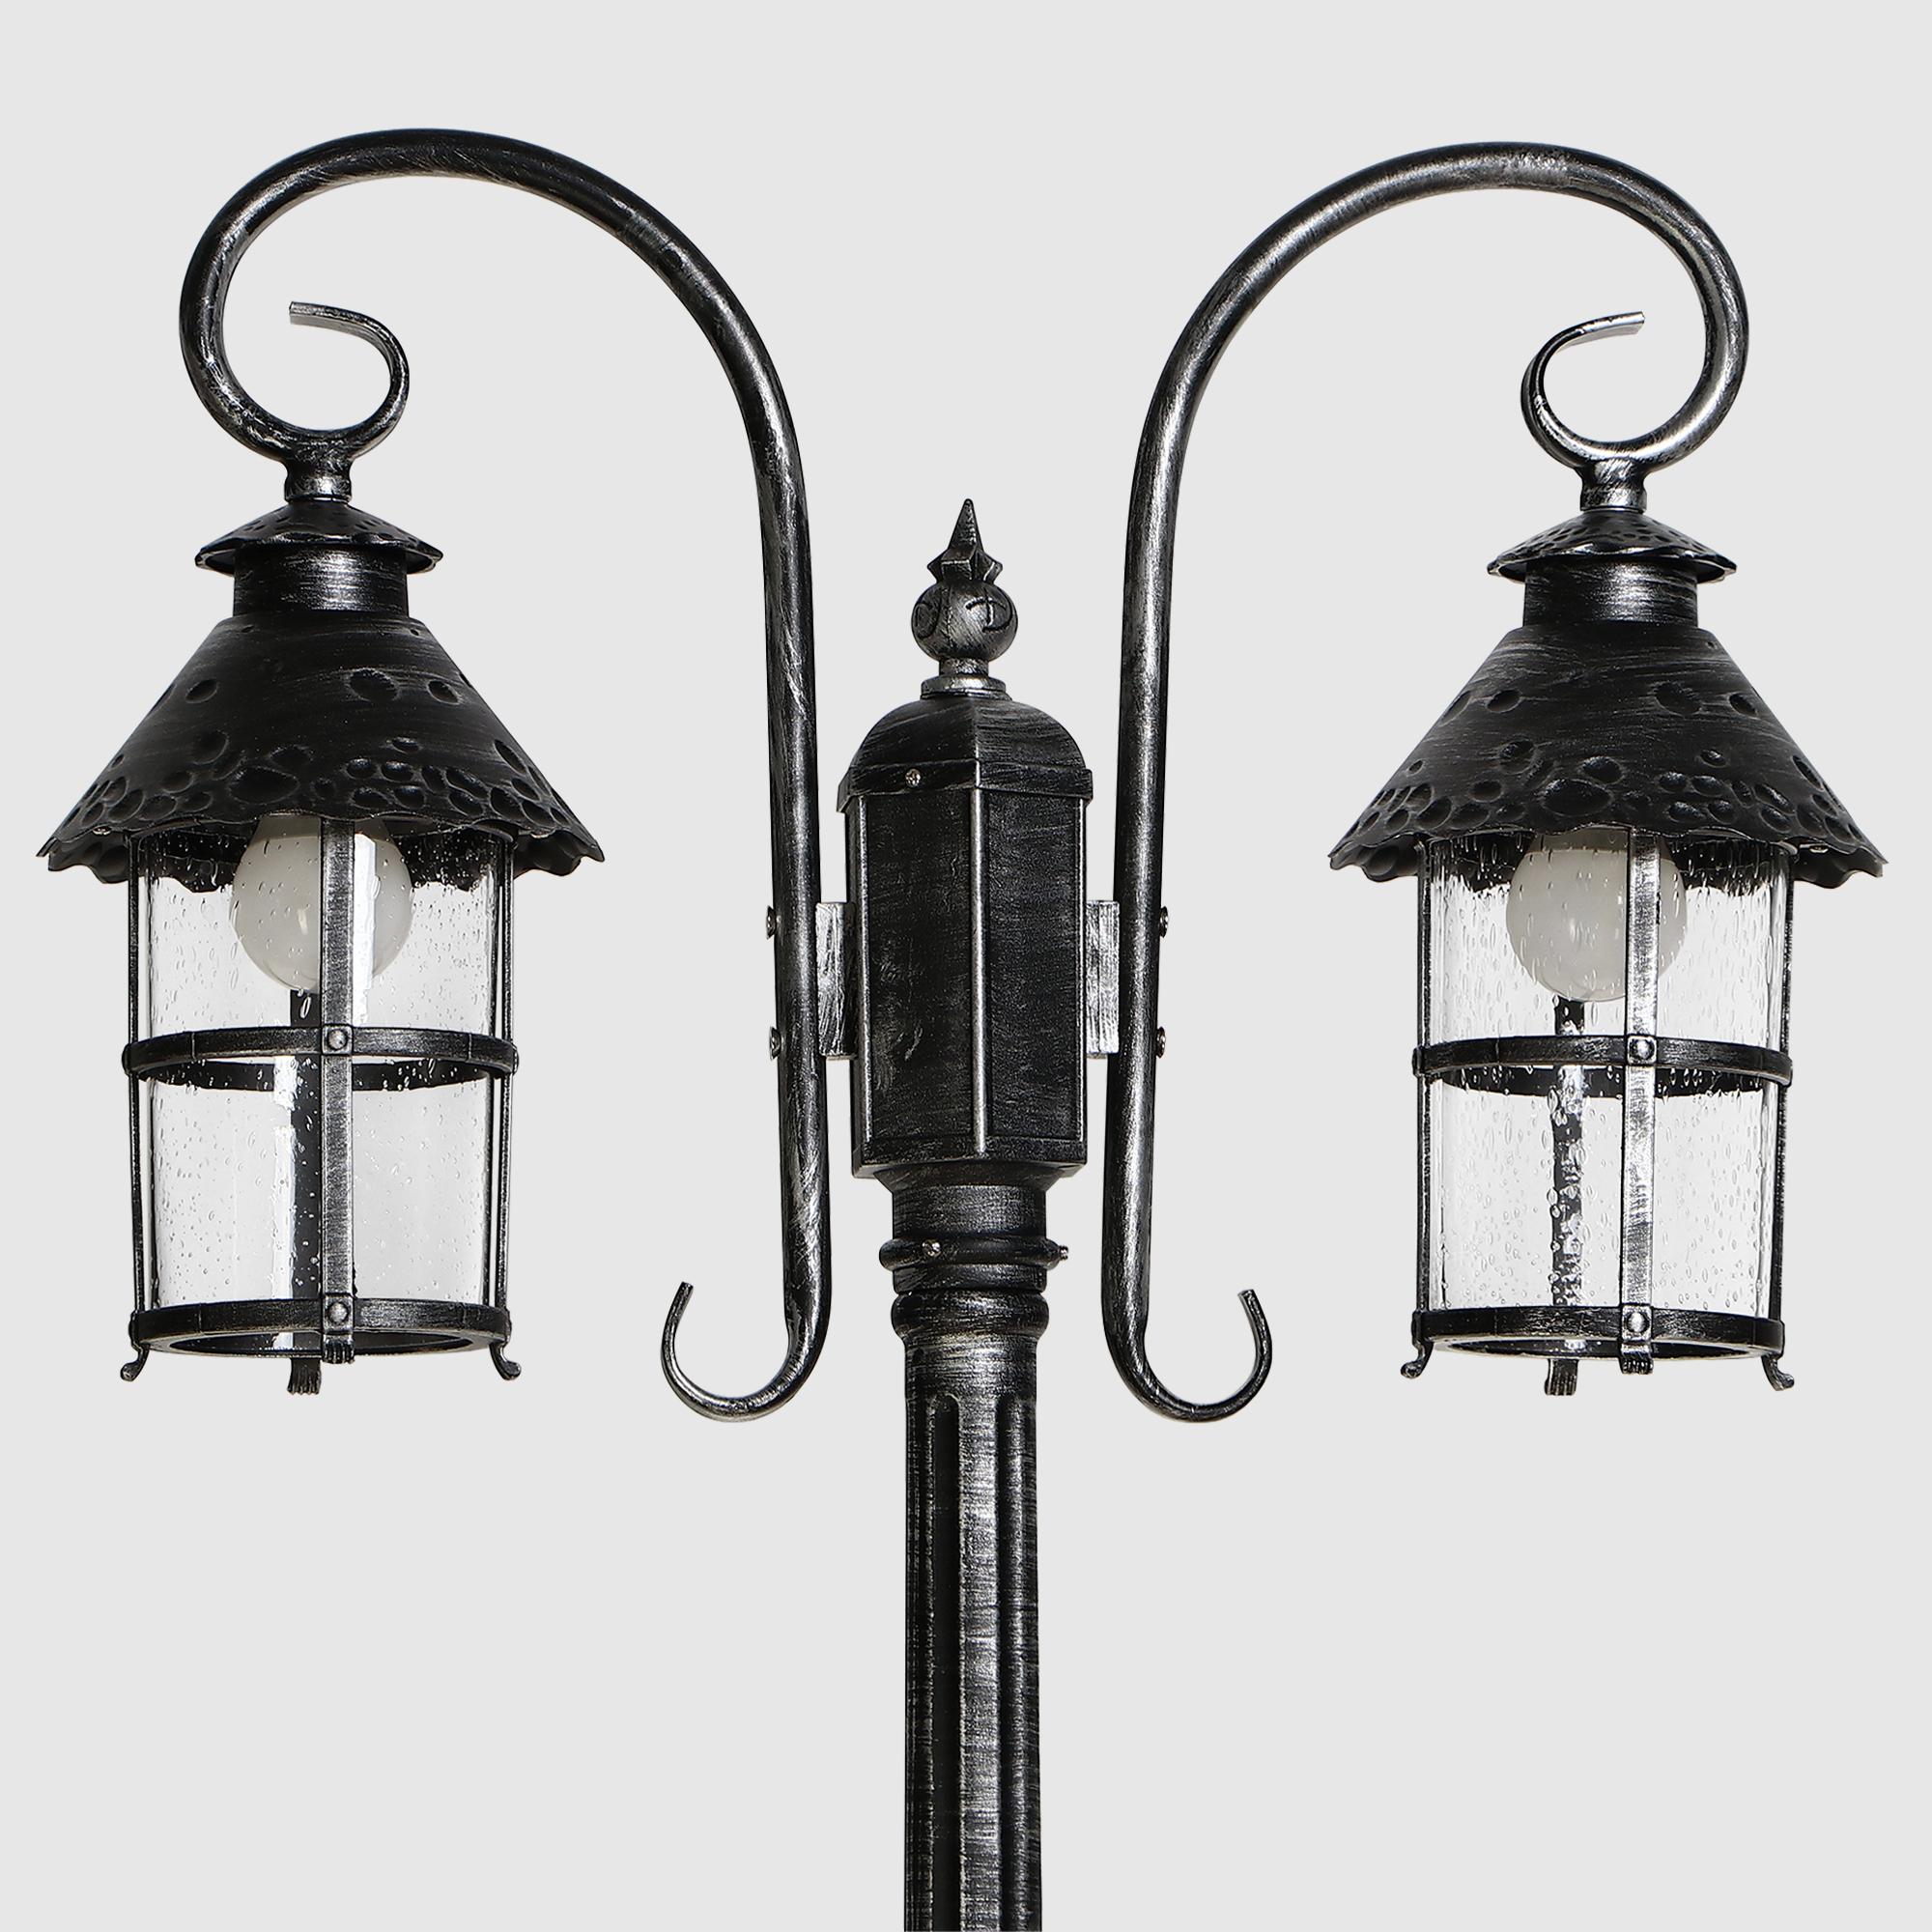 Светильник садовый Amber Lamp 9732-POLE 10 напольный IP44 E27 100Вт, черное серебро, цвет черное серебро, прозрачный - фото 3